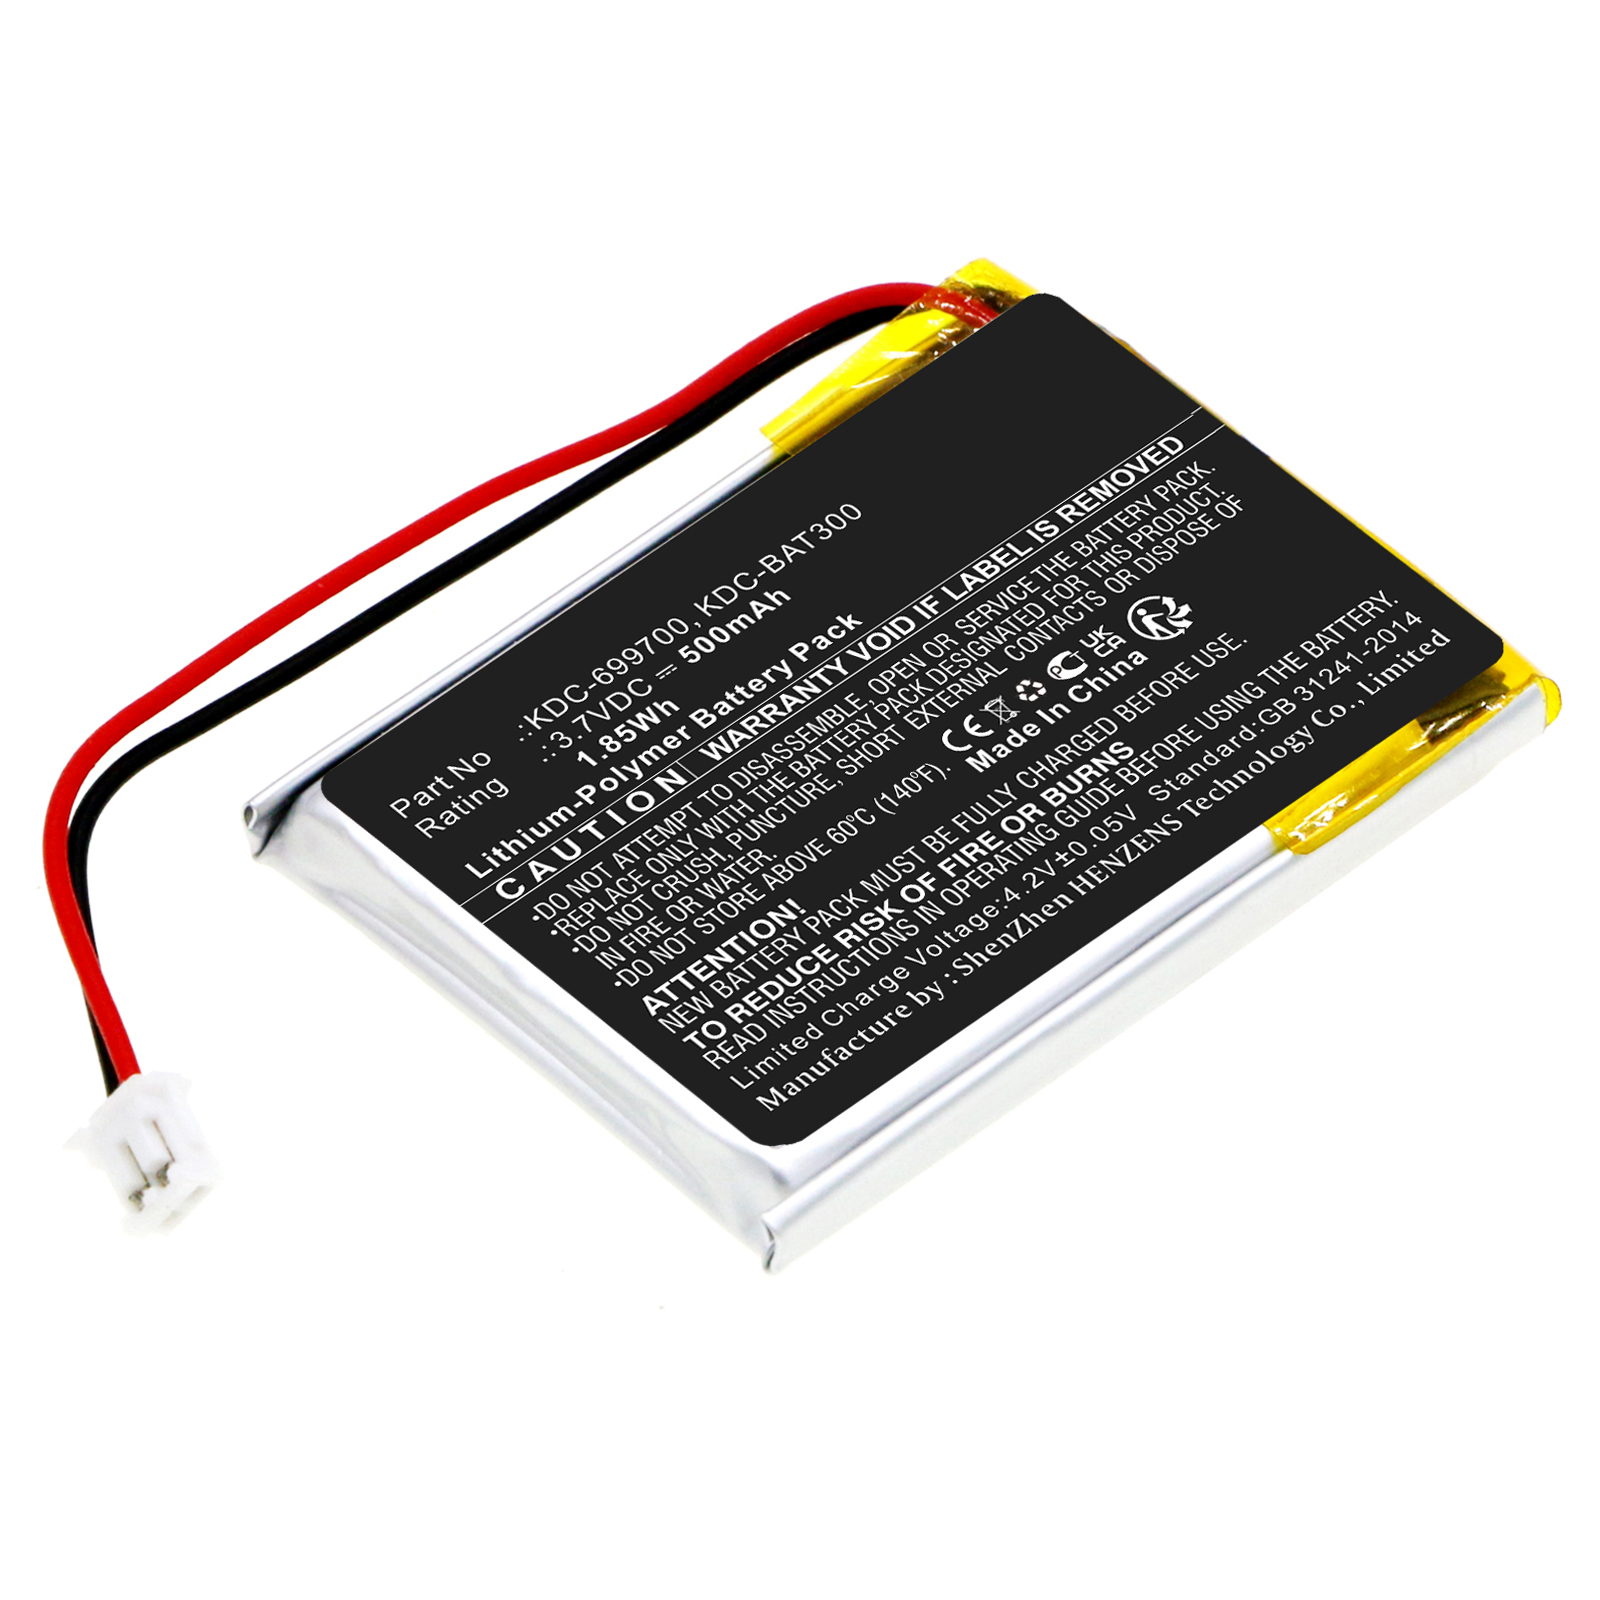 Synergy Digital Barcode Scanner Battery, Compatible with KOAMTAC KDC-699700 Barcode Scanner Battery (Li-Pol, 3.7V, 500mAh)